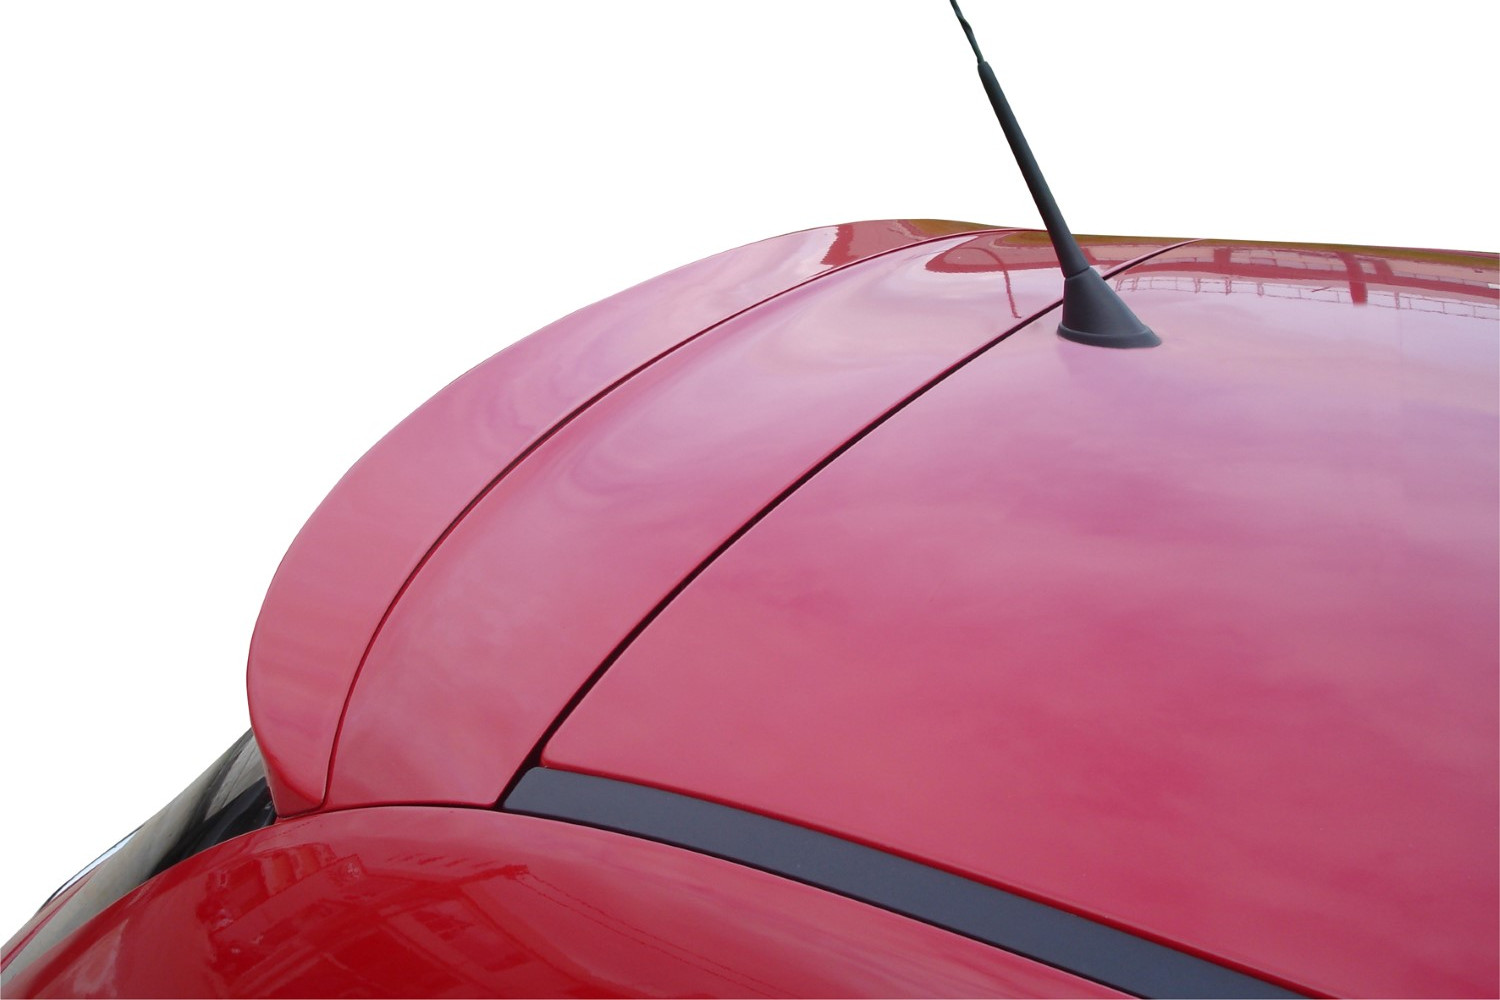 Spoiler de techo Trasero Lip Para  Fiat 500 2007+Plástico OEM Rear Spoiler Roof